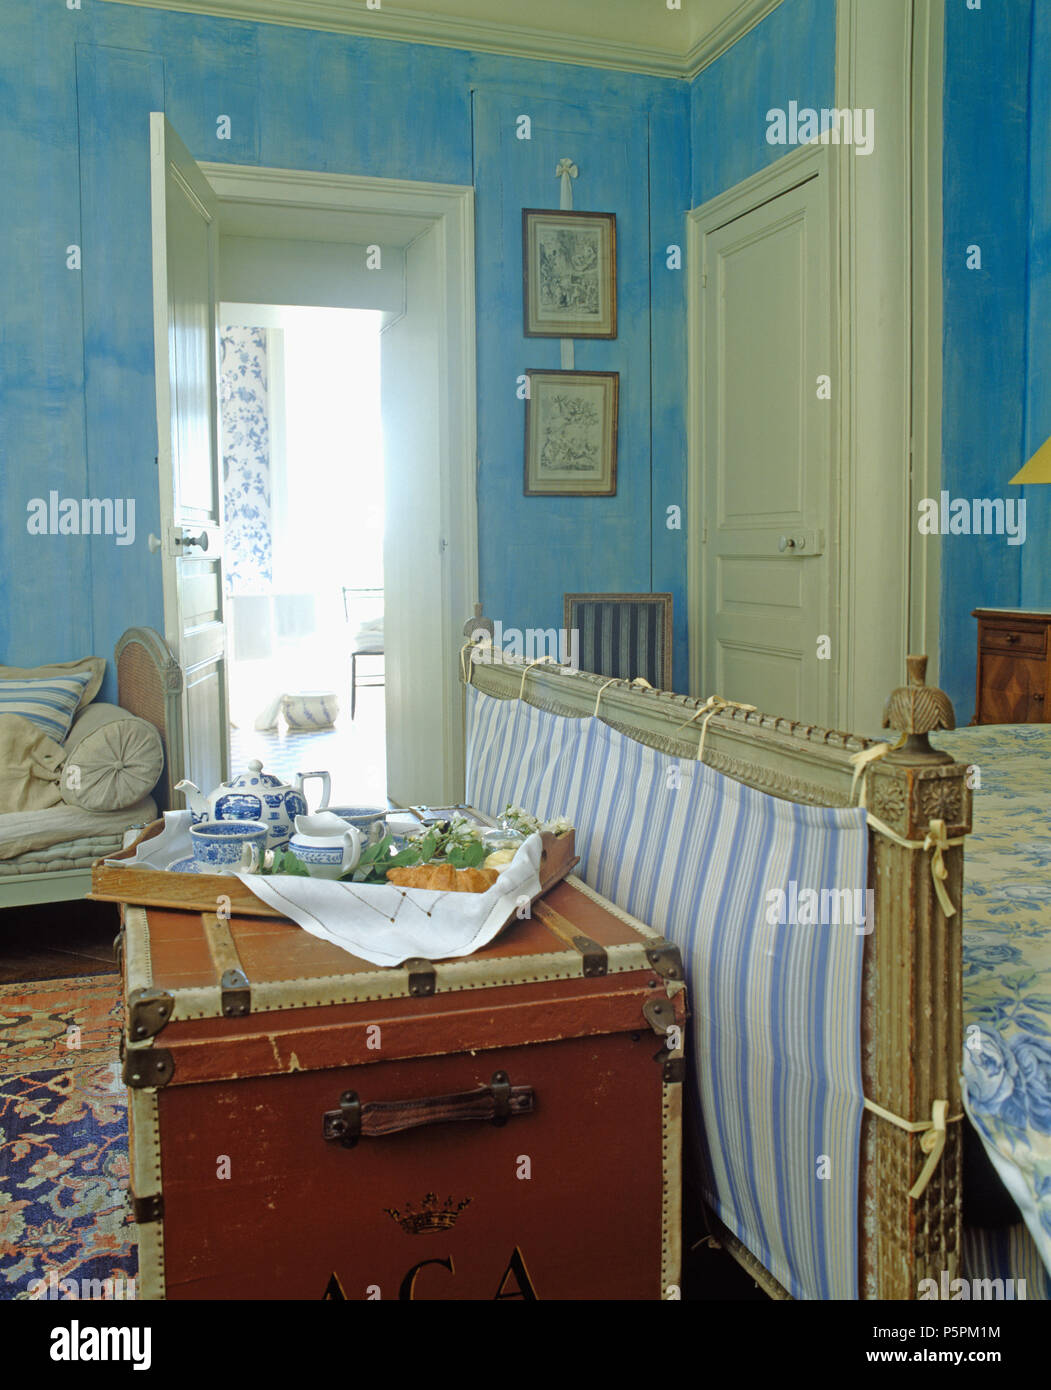 Frühstückstablett mit Blau + weiß China auf Vintage trunk am Fuße des Bettes im Blauen Land Schlafzimmer Stockfoto